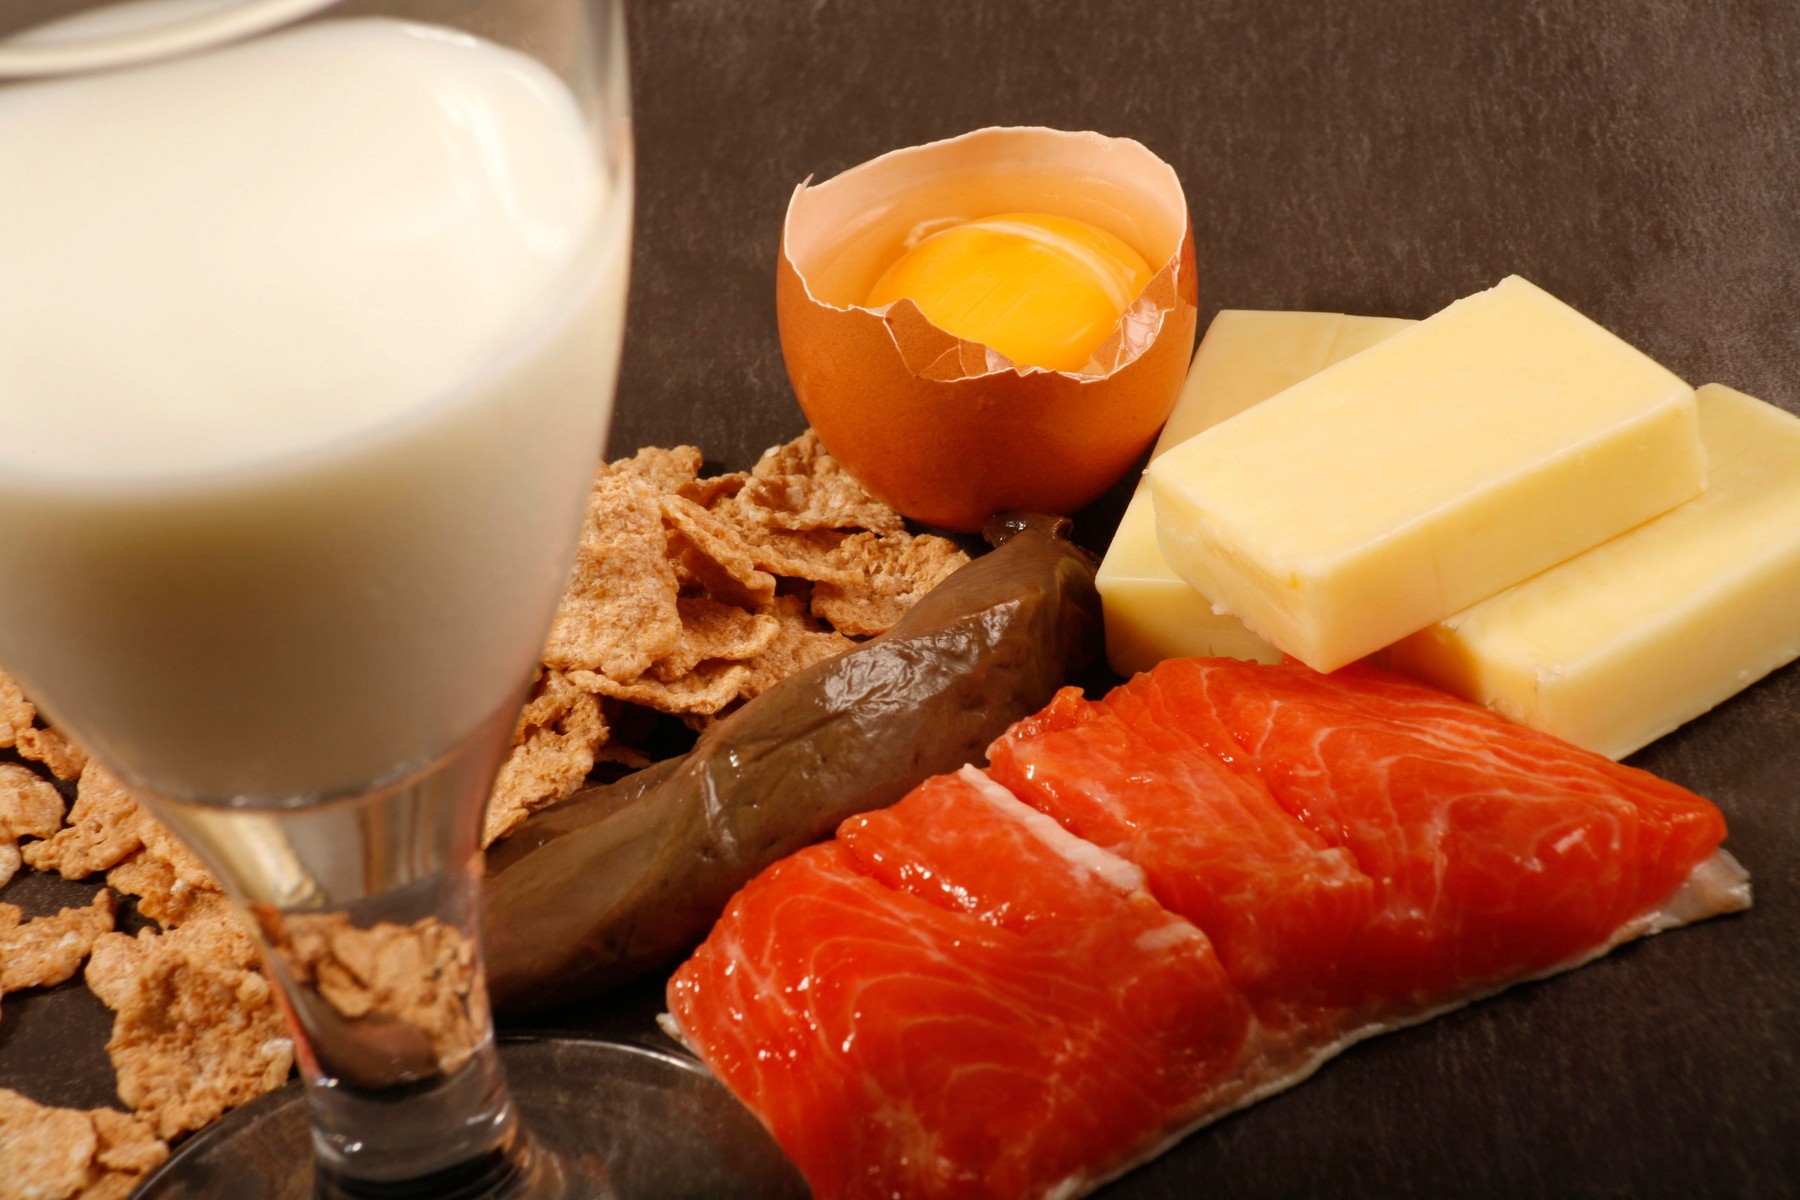 Nutriție/Sănătate: Deficiența de vitamina B12, adesea nediagnosticată, poate fi prevenită prin alimentație